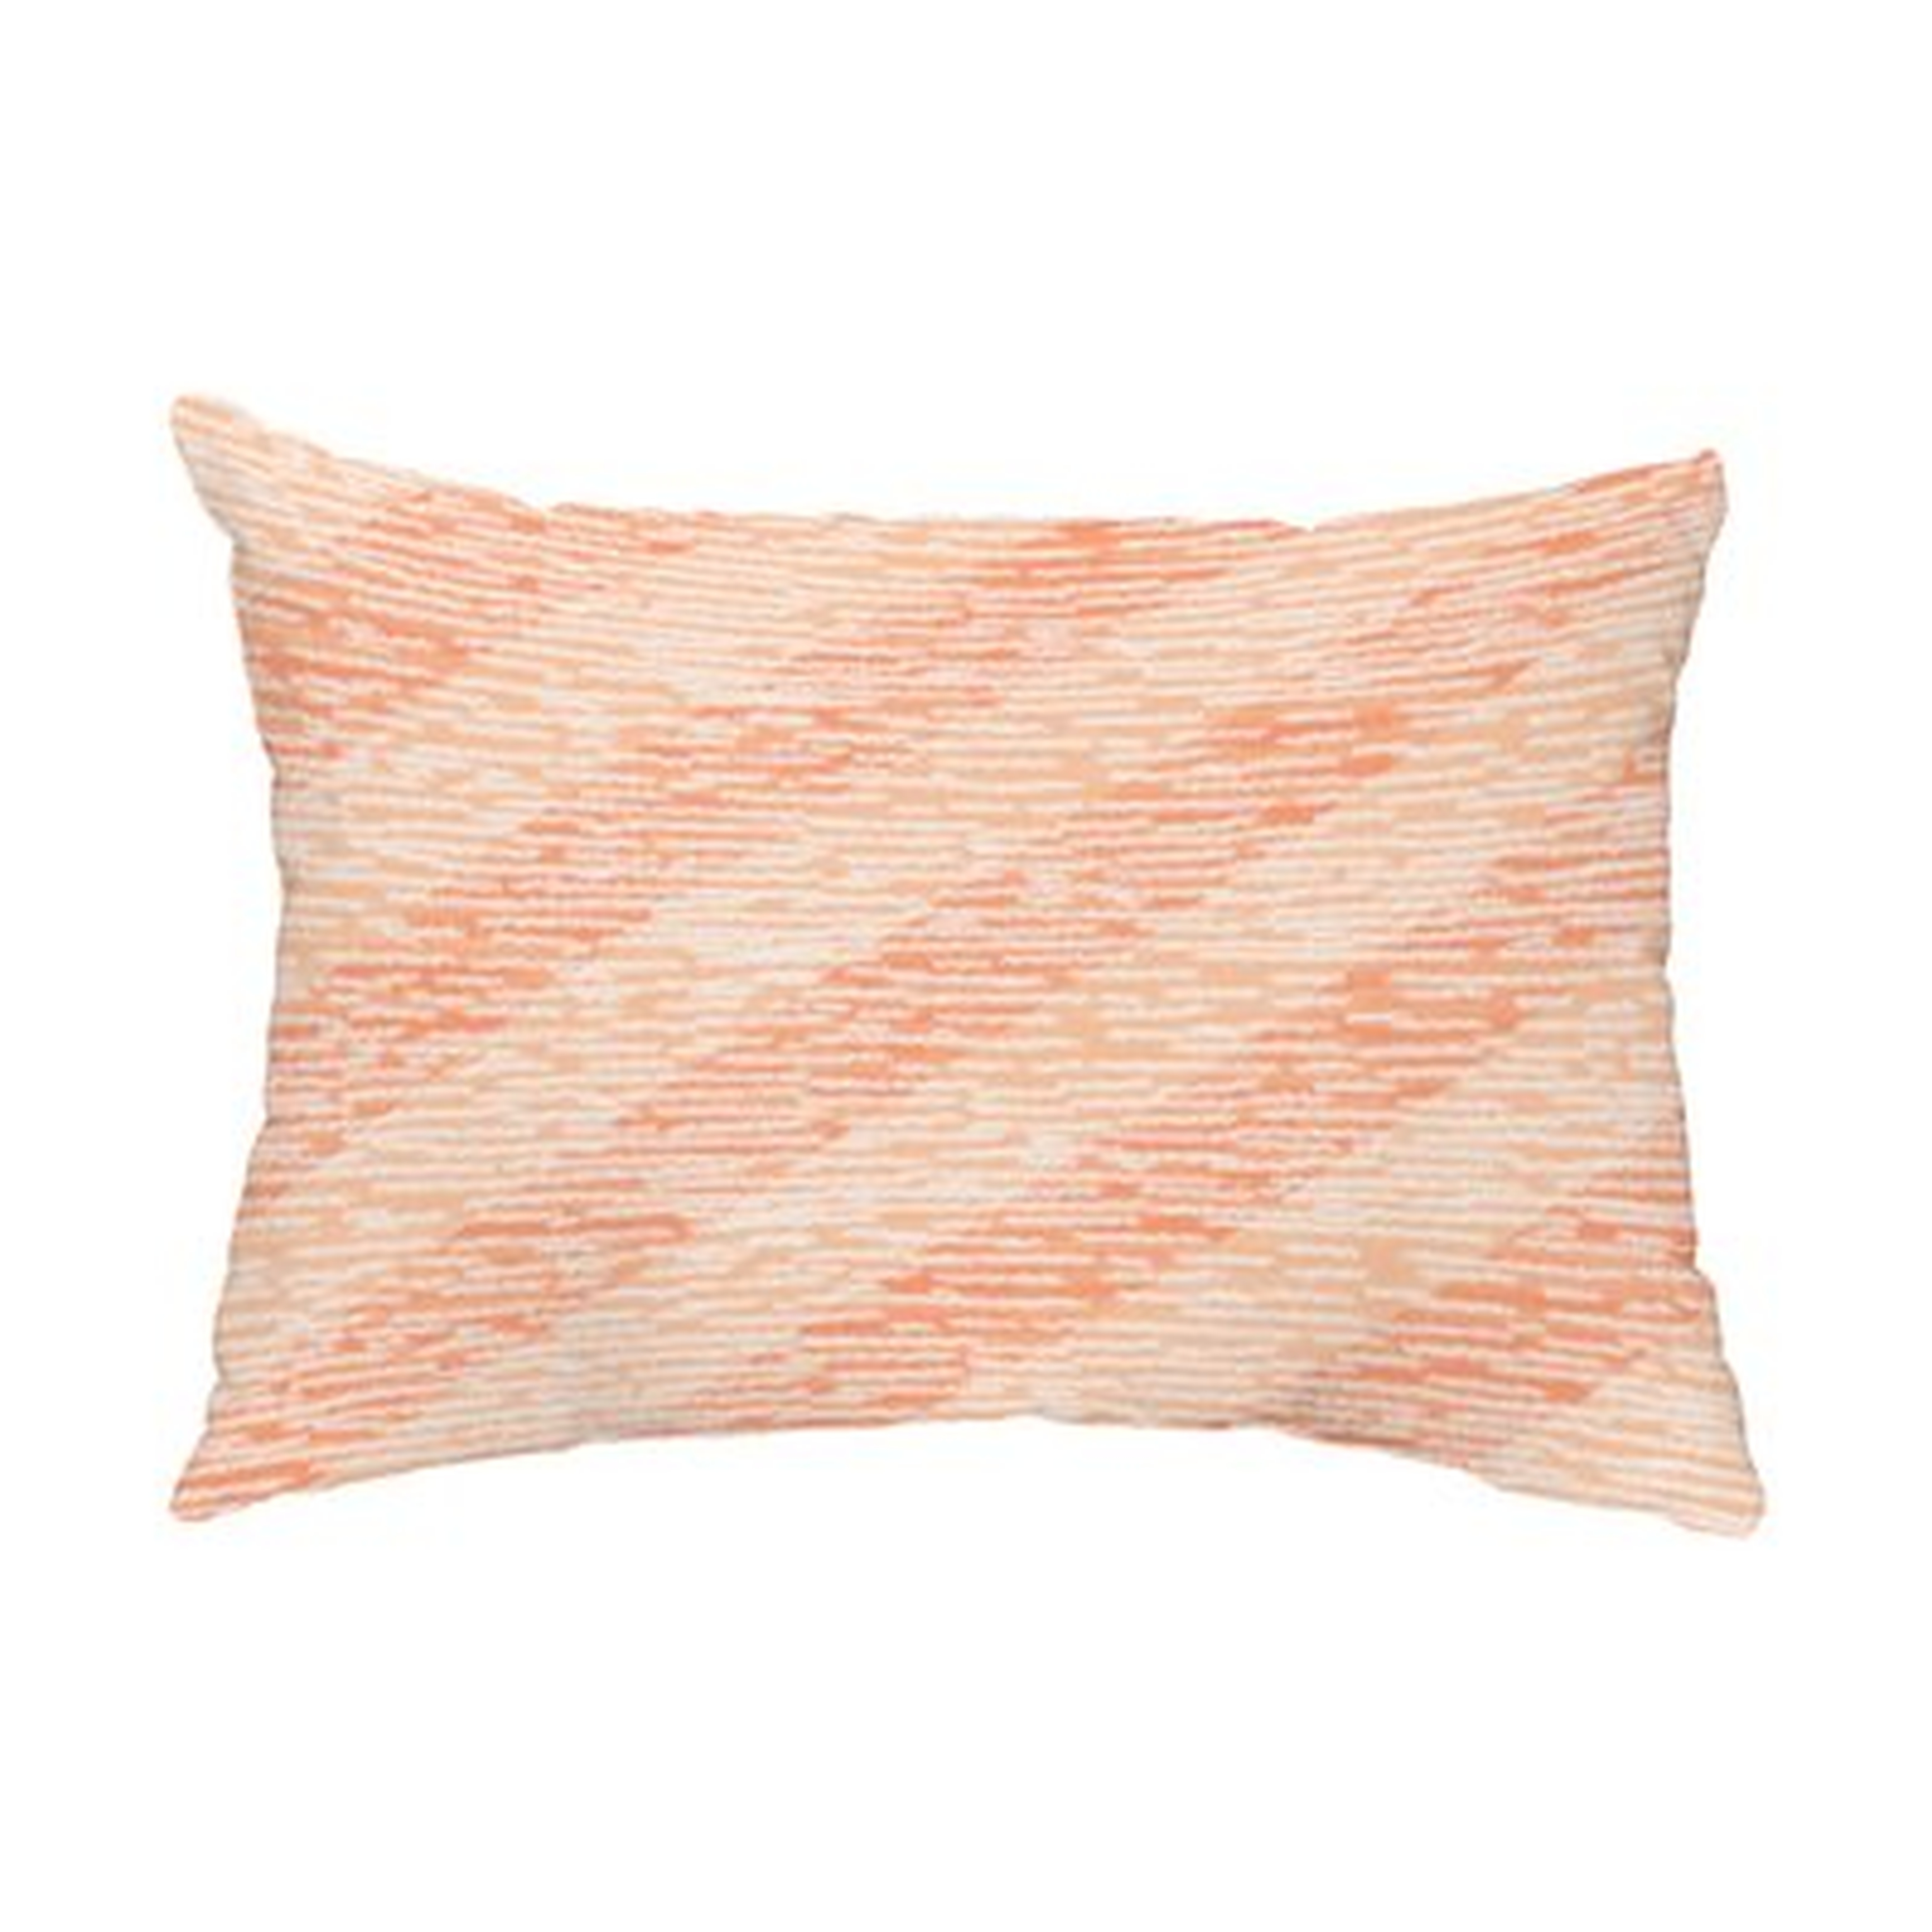 Borkowski Marled Knit Stripe Indoor/Outdoor Lumbar Pillow, 20" x 14" - Wayfair